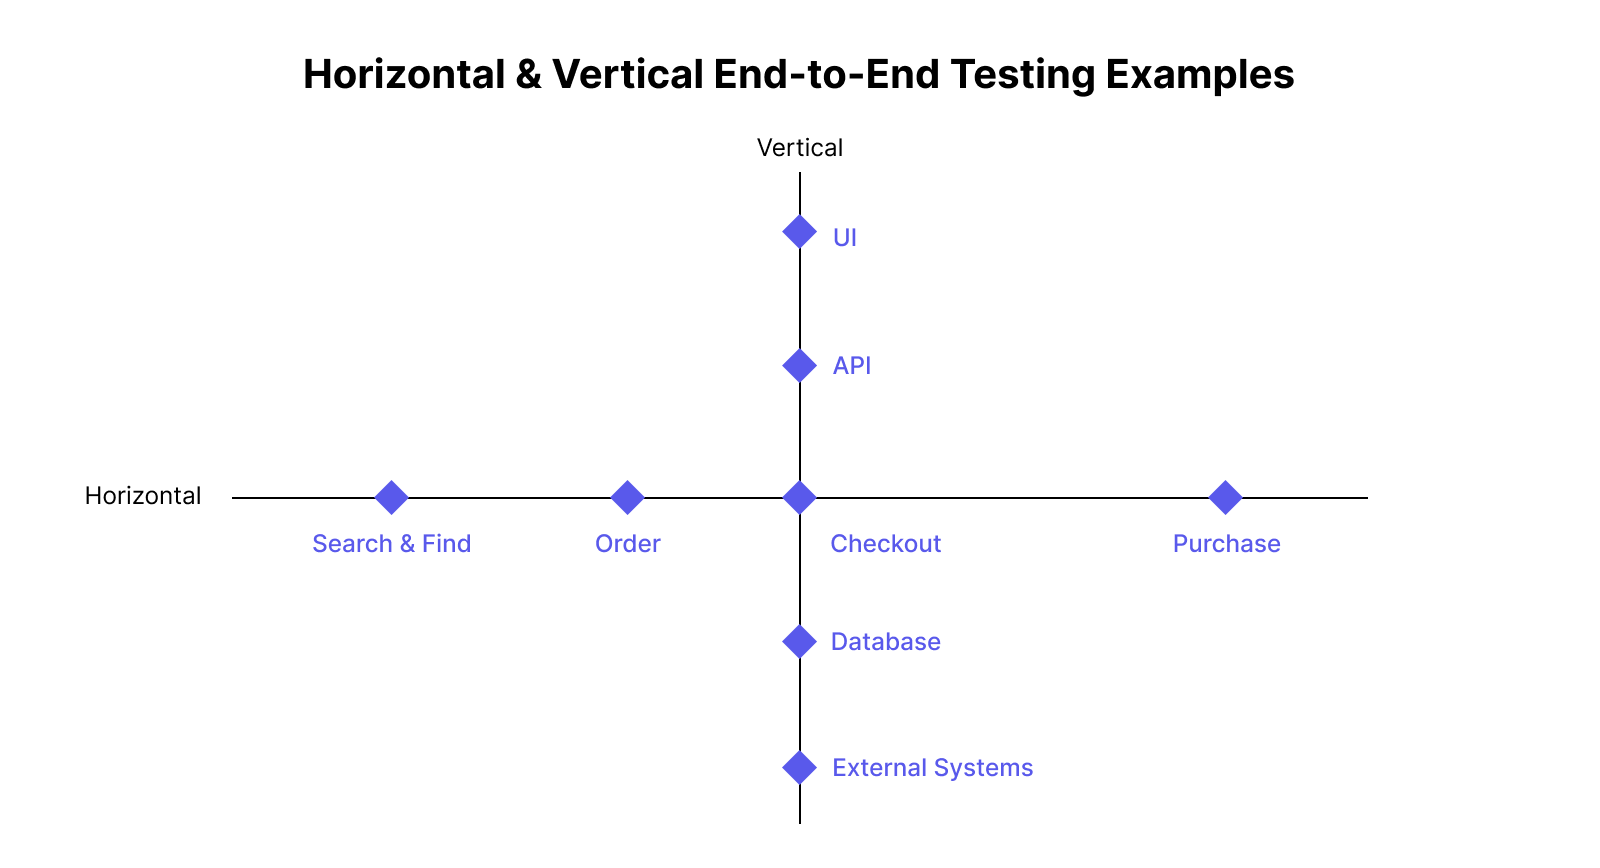 Horizontal & vertical E2E testing examples